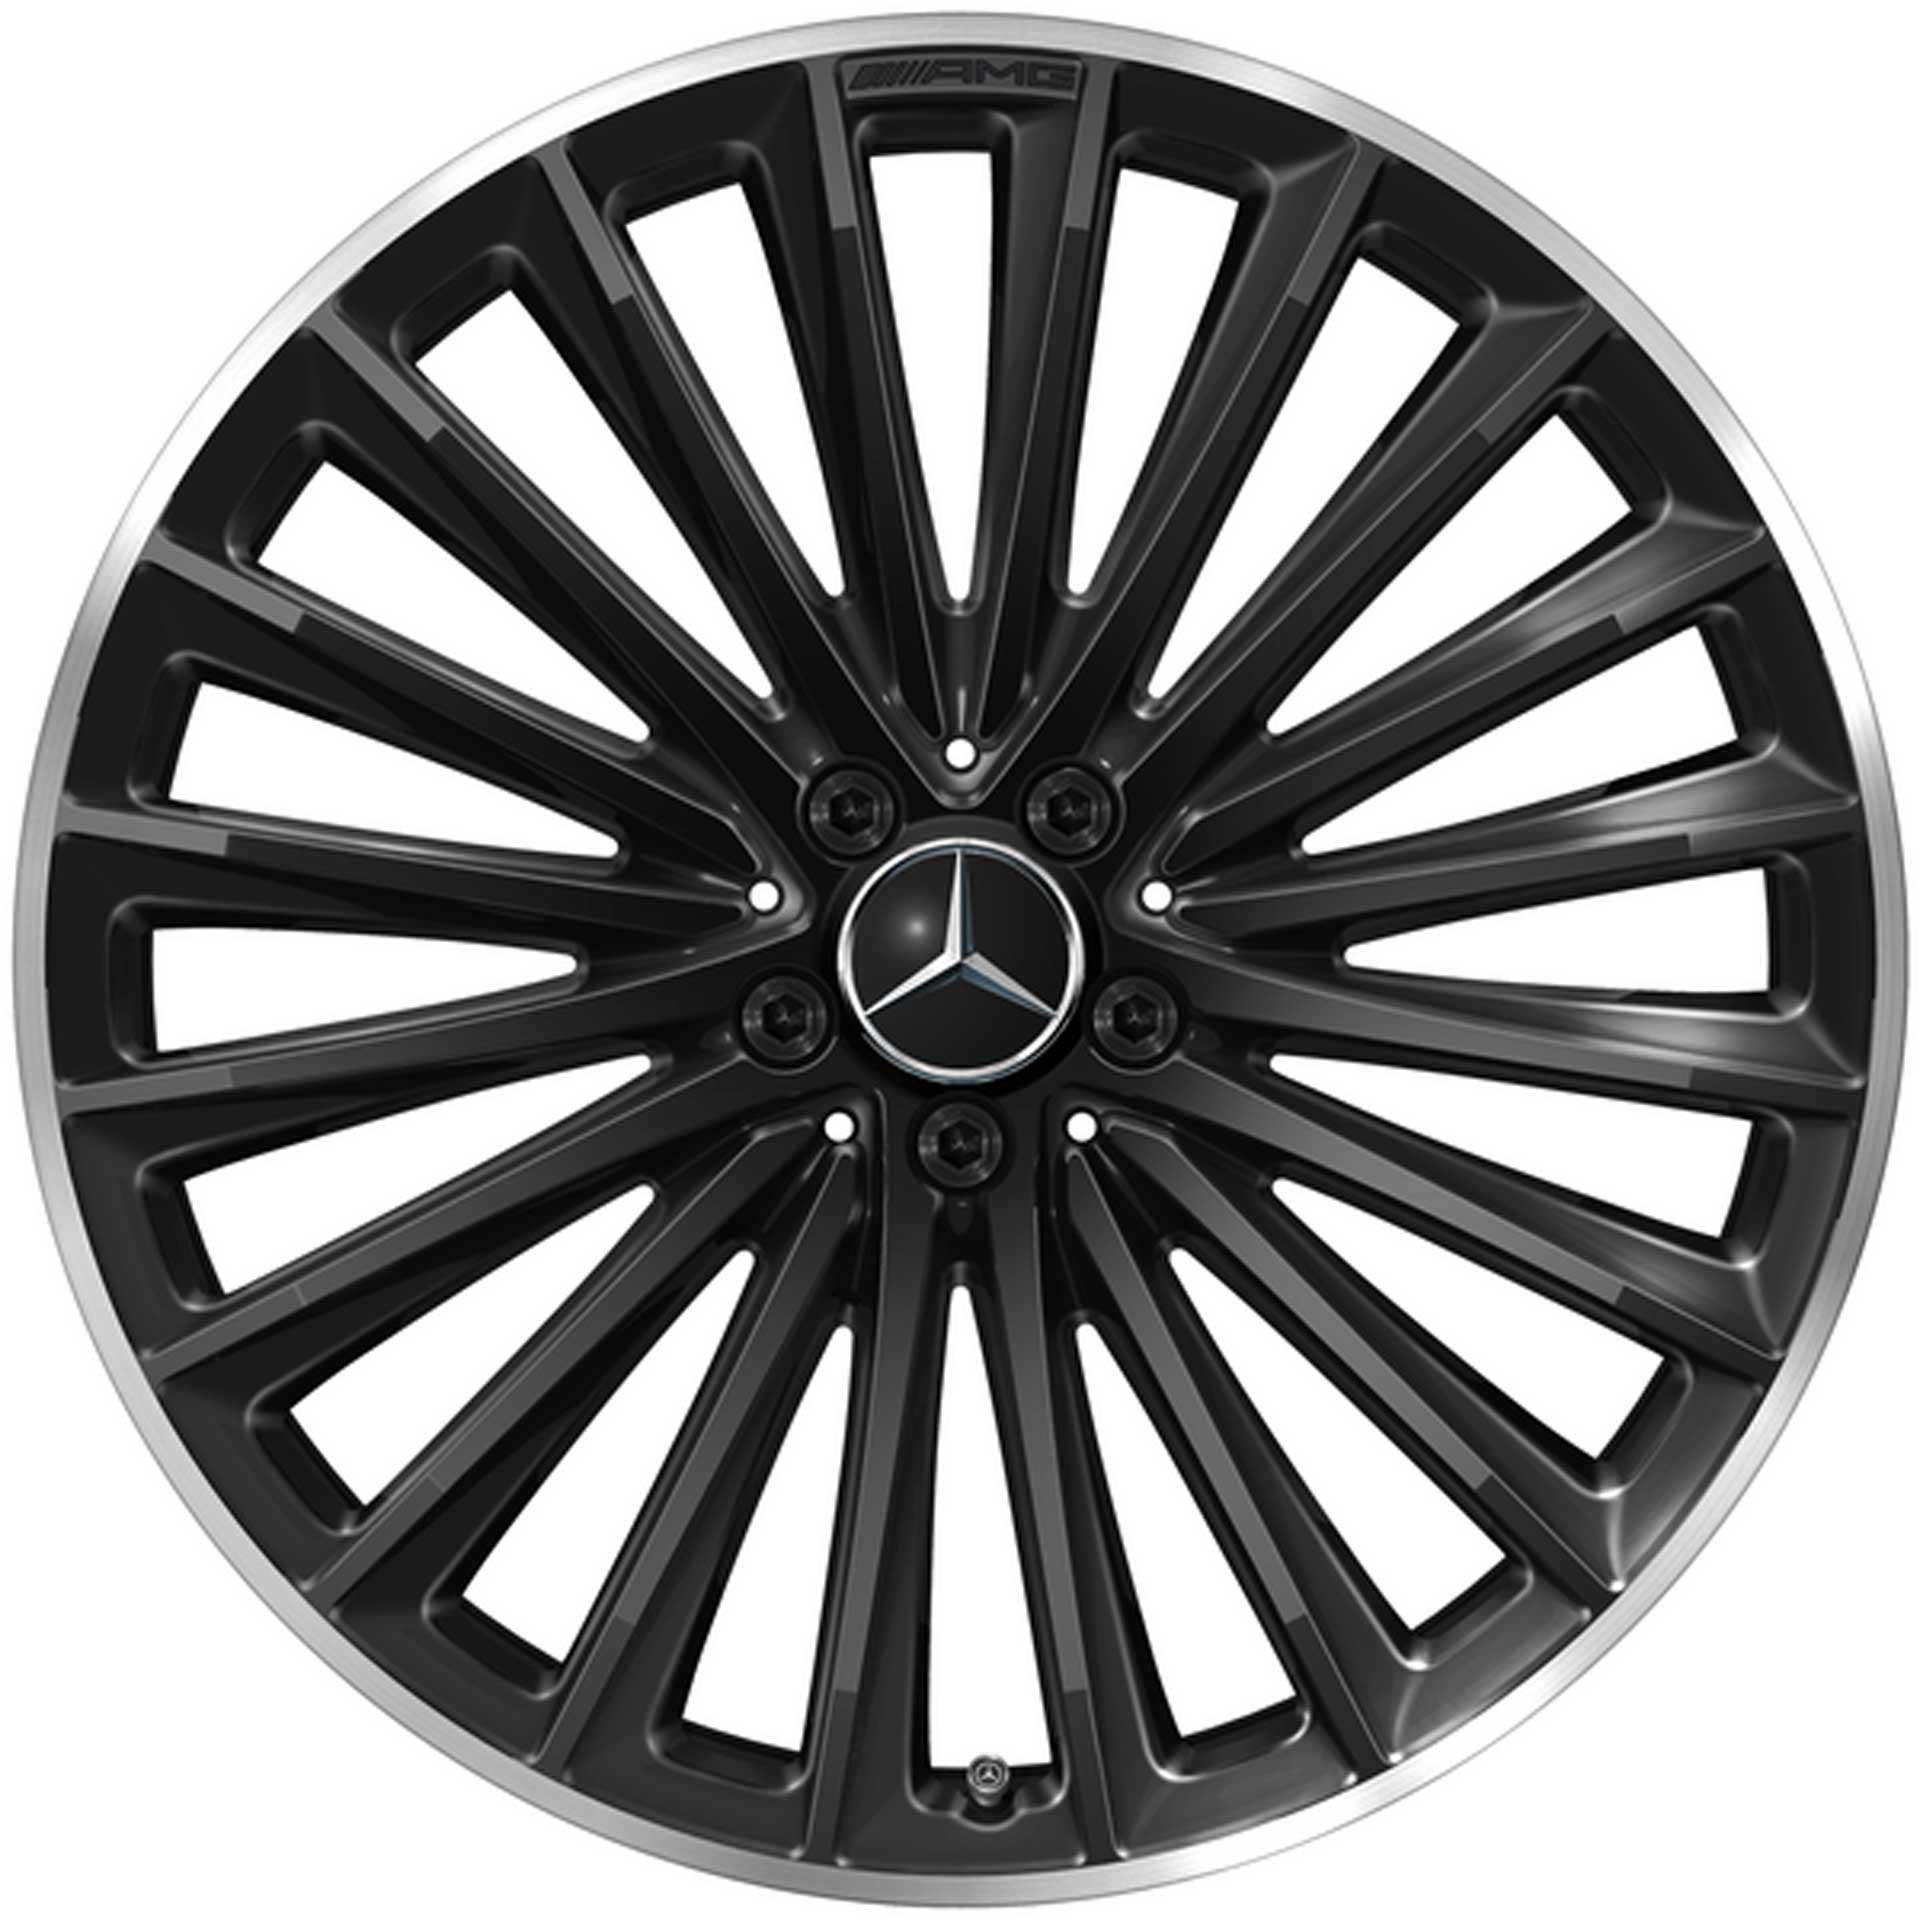 Mercedes-AMG Vielspeichen-Rad 21 Zoll Leichtmetallfelge EQE schwarz glanzgedreht A29540126007X72